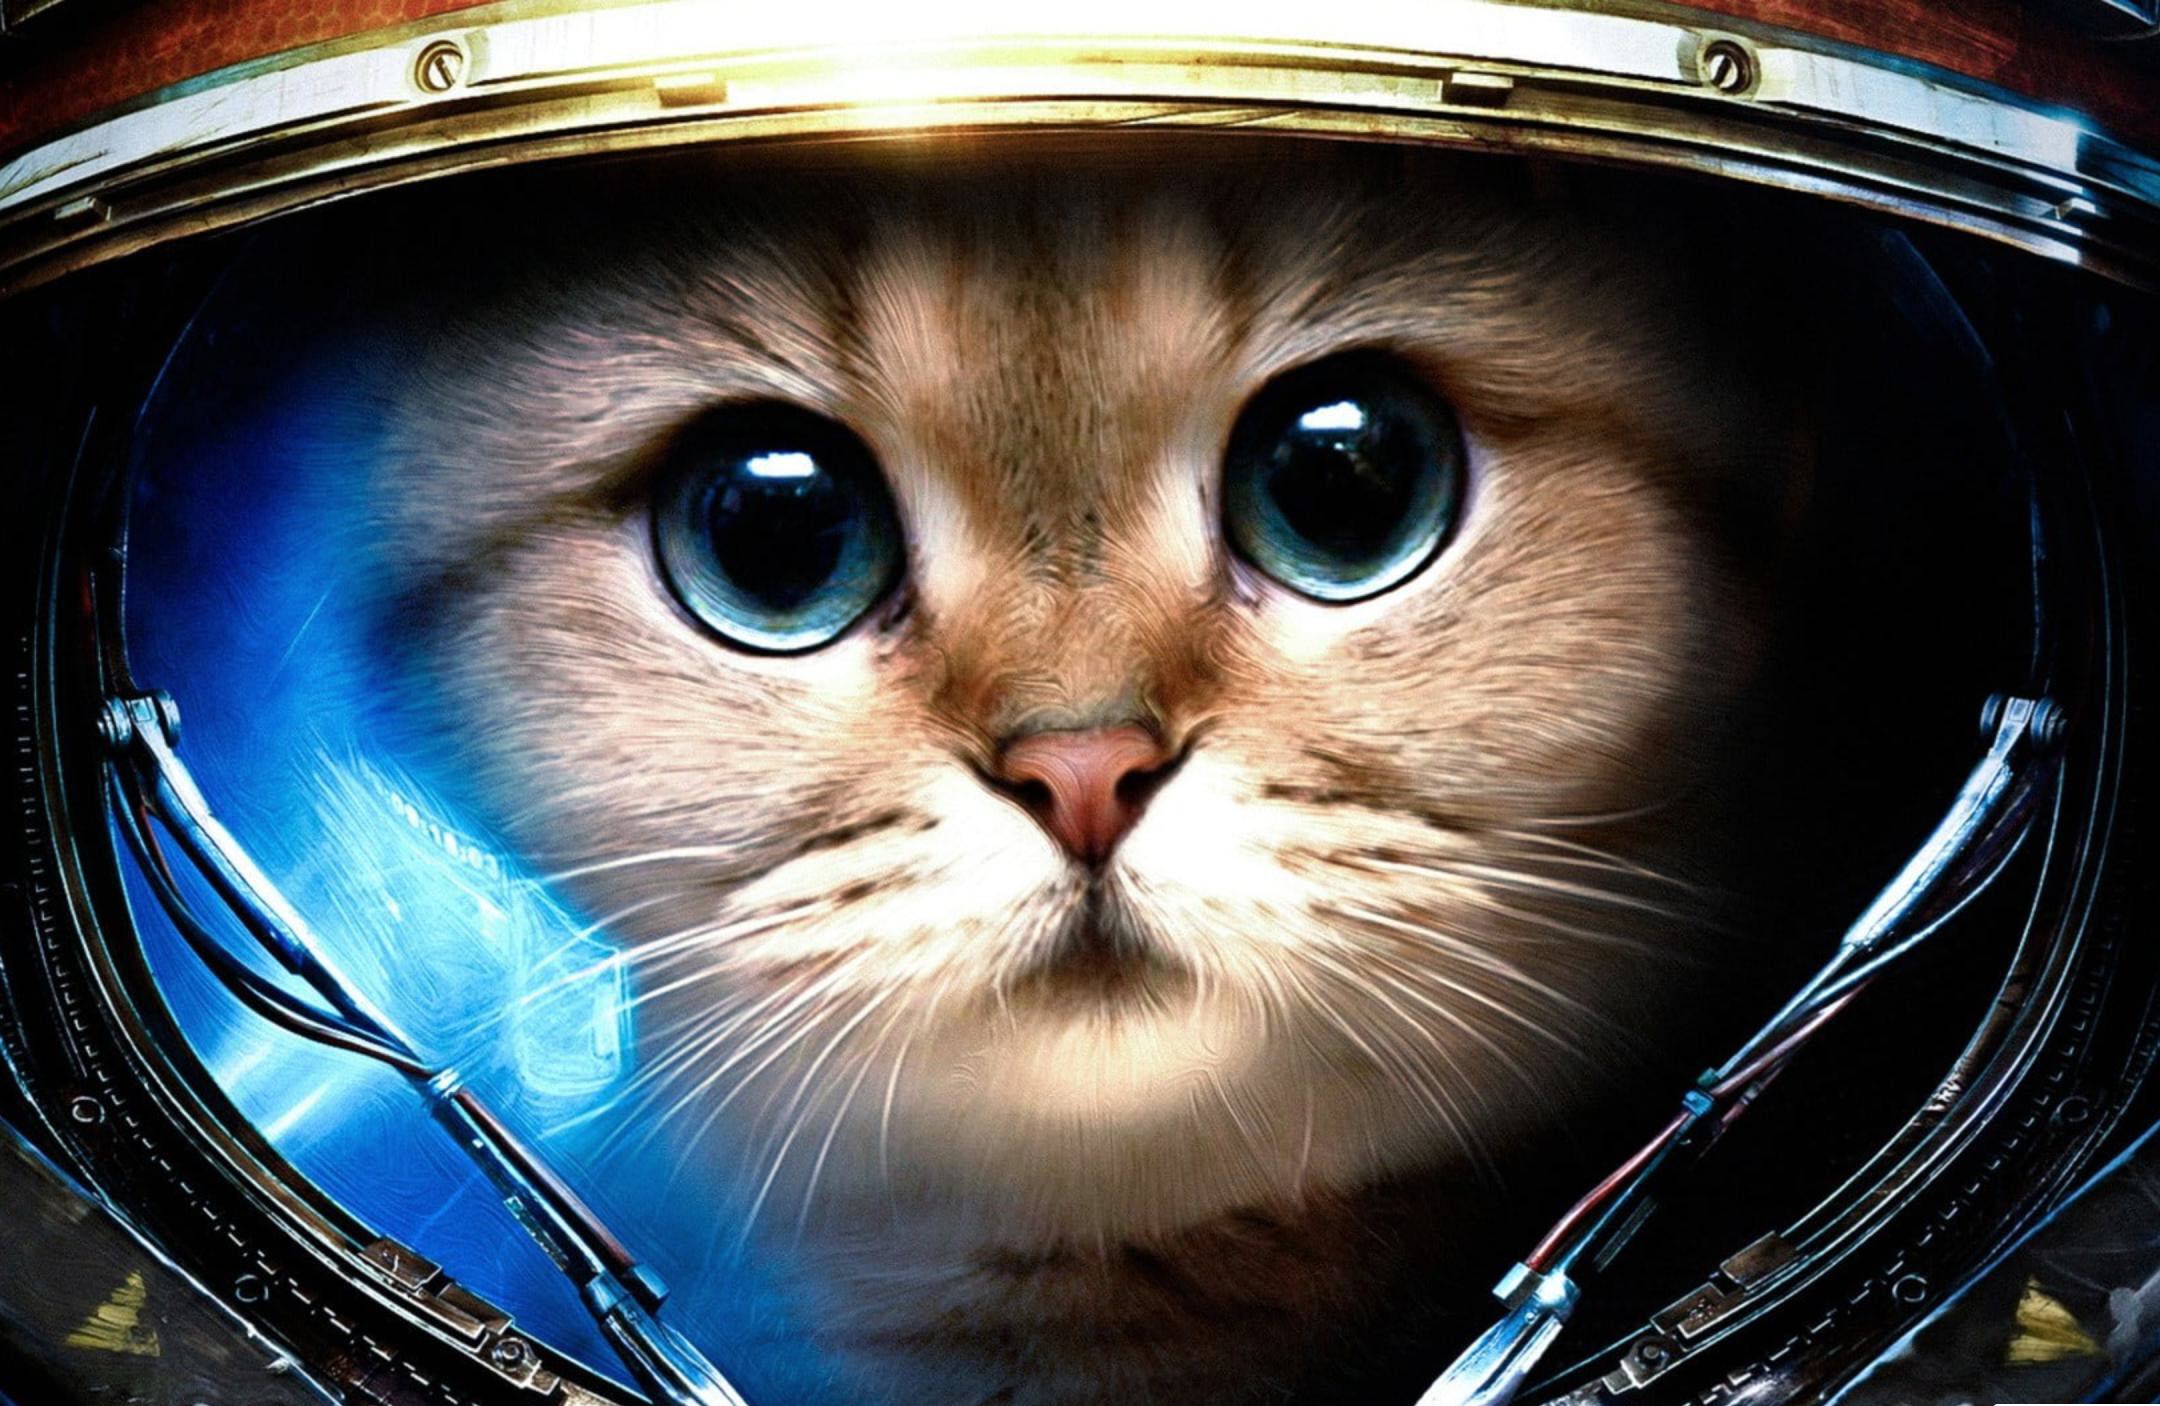 Hình nền mèo cho máy tính: Bạn muốn tạo cảm giác mới lạ cho màn hình máy tính của mình? Hãy lựa chọn những hình nền mèo đẹp mắt và sinh động nhất để trang trí thiết bị của mình. Hình ảnh mèo sẽ mang lại không gian mới mẻ, đầy sắc màu và vô cùng thú vị cho bạn. Hãy khám phá ngay nhé!